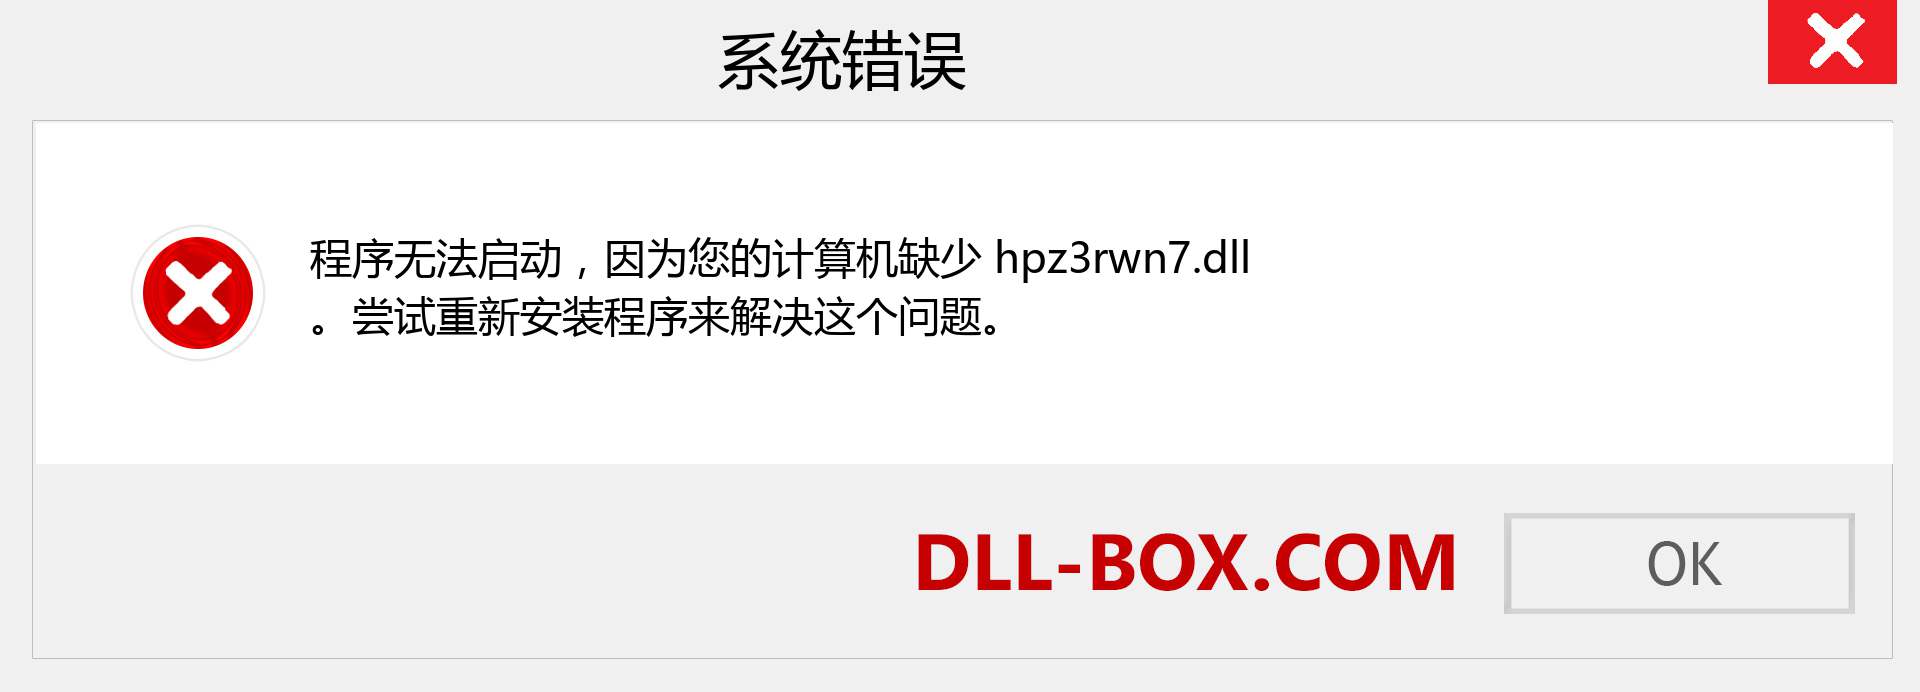 hpz3rwn7.dll 文件丢失？。 适用于 Windows 7、8、10 的下载 - 修复 Windows、照片、图像上的 hpz3rwn7 dll 丢失错误